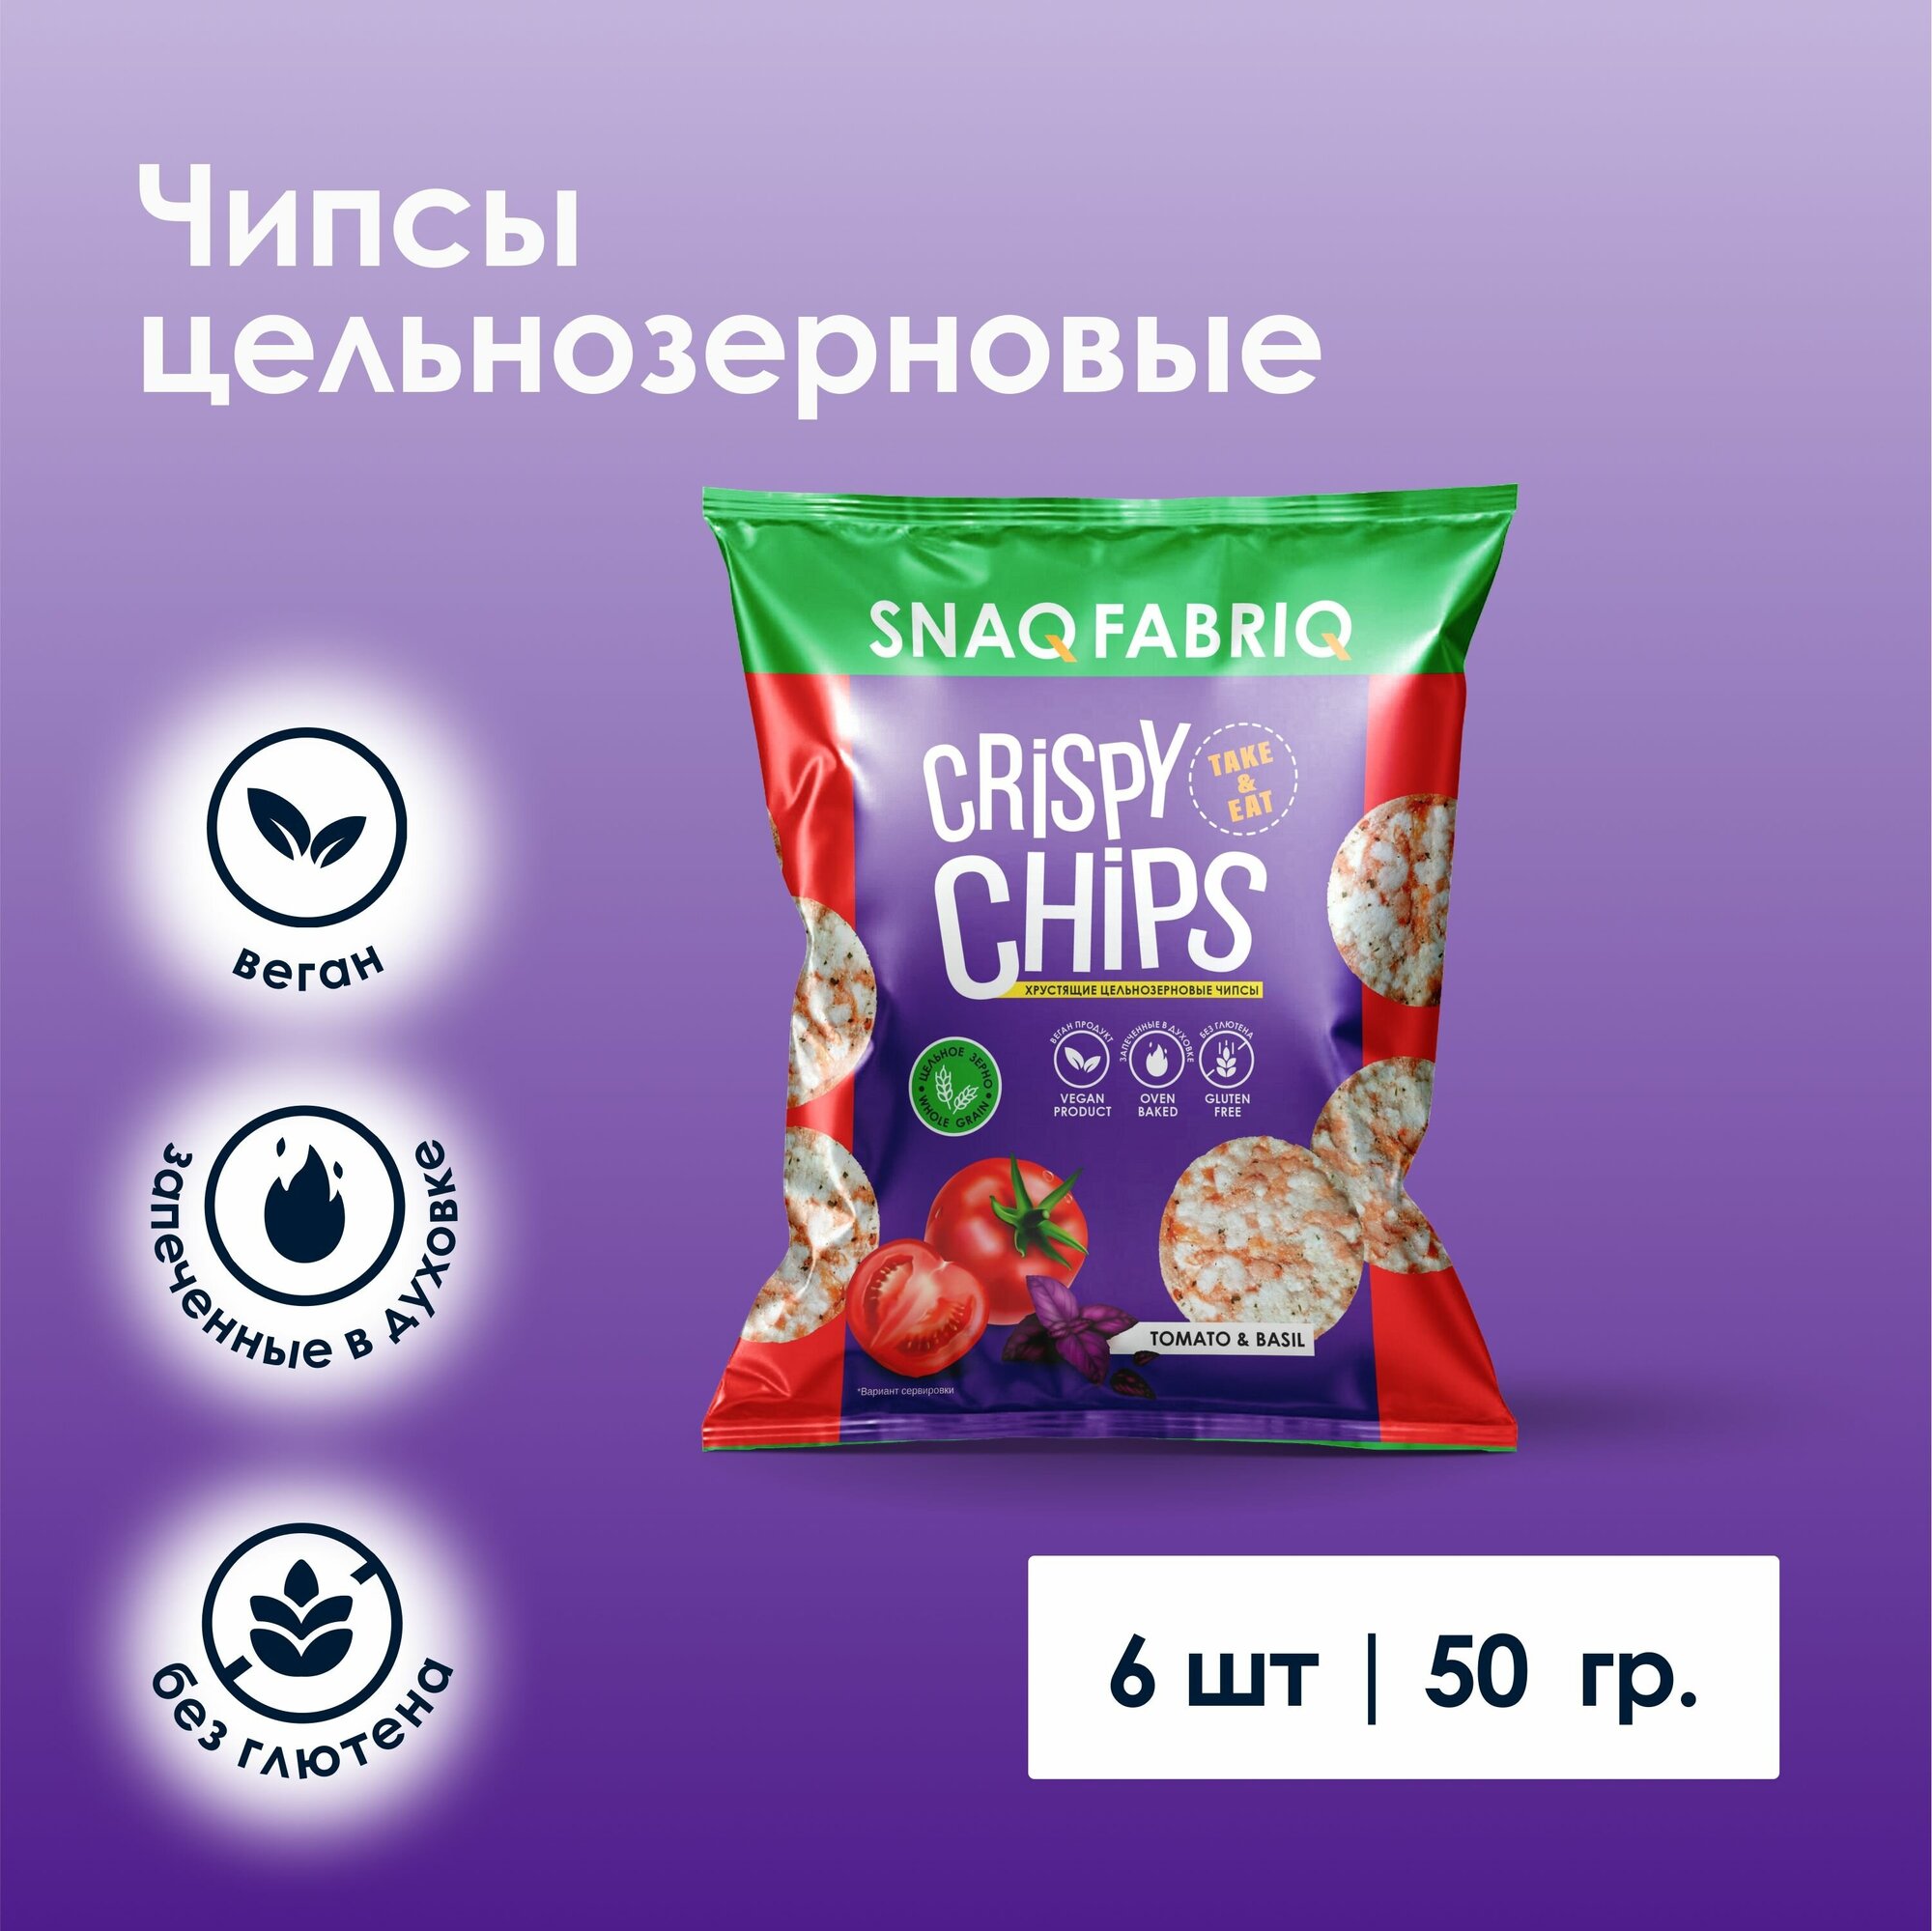 Чипсы цельнозерновые Snaq Fabriq Crispy Chips со вкусом "Томат и базилик", 50г х 6шт